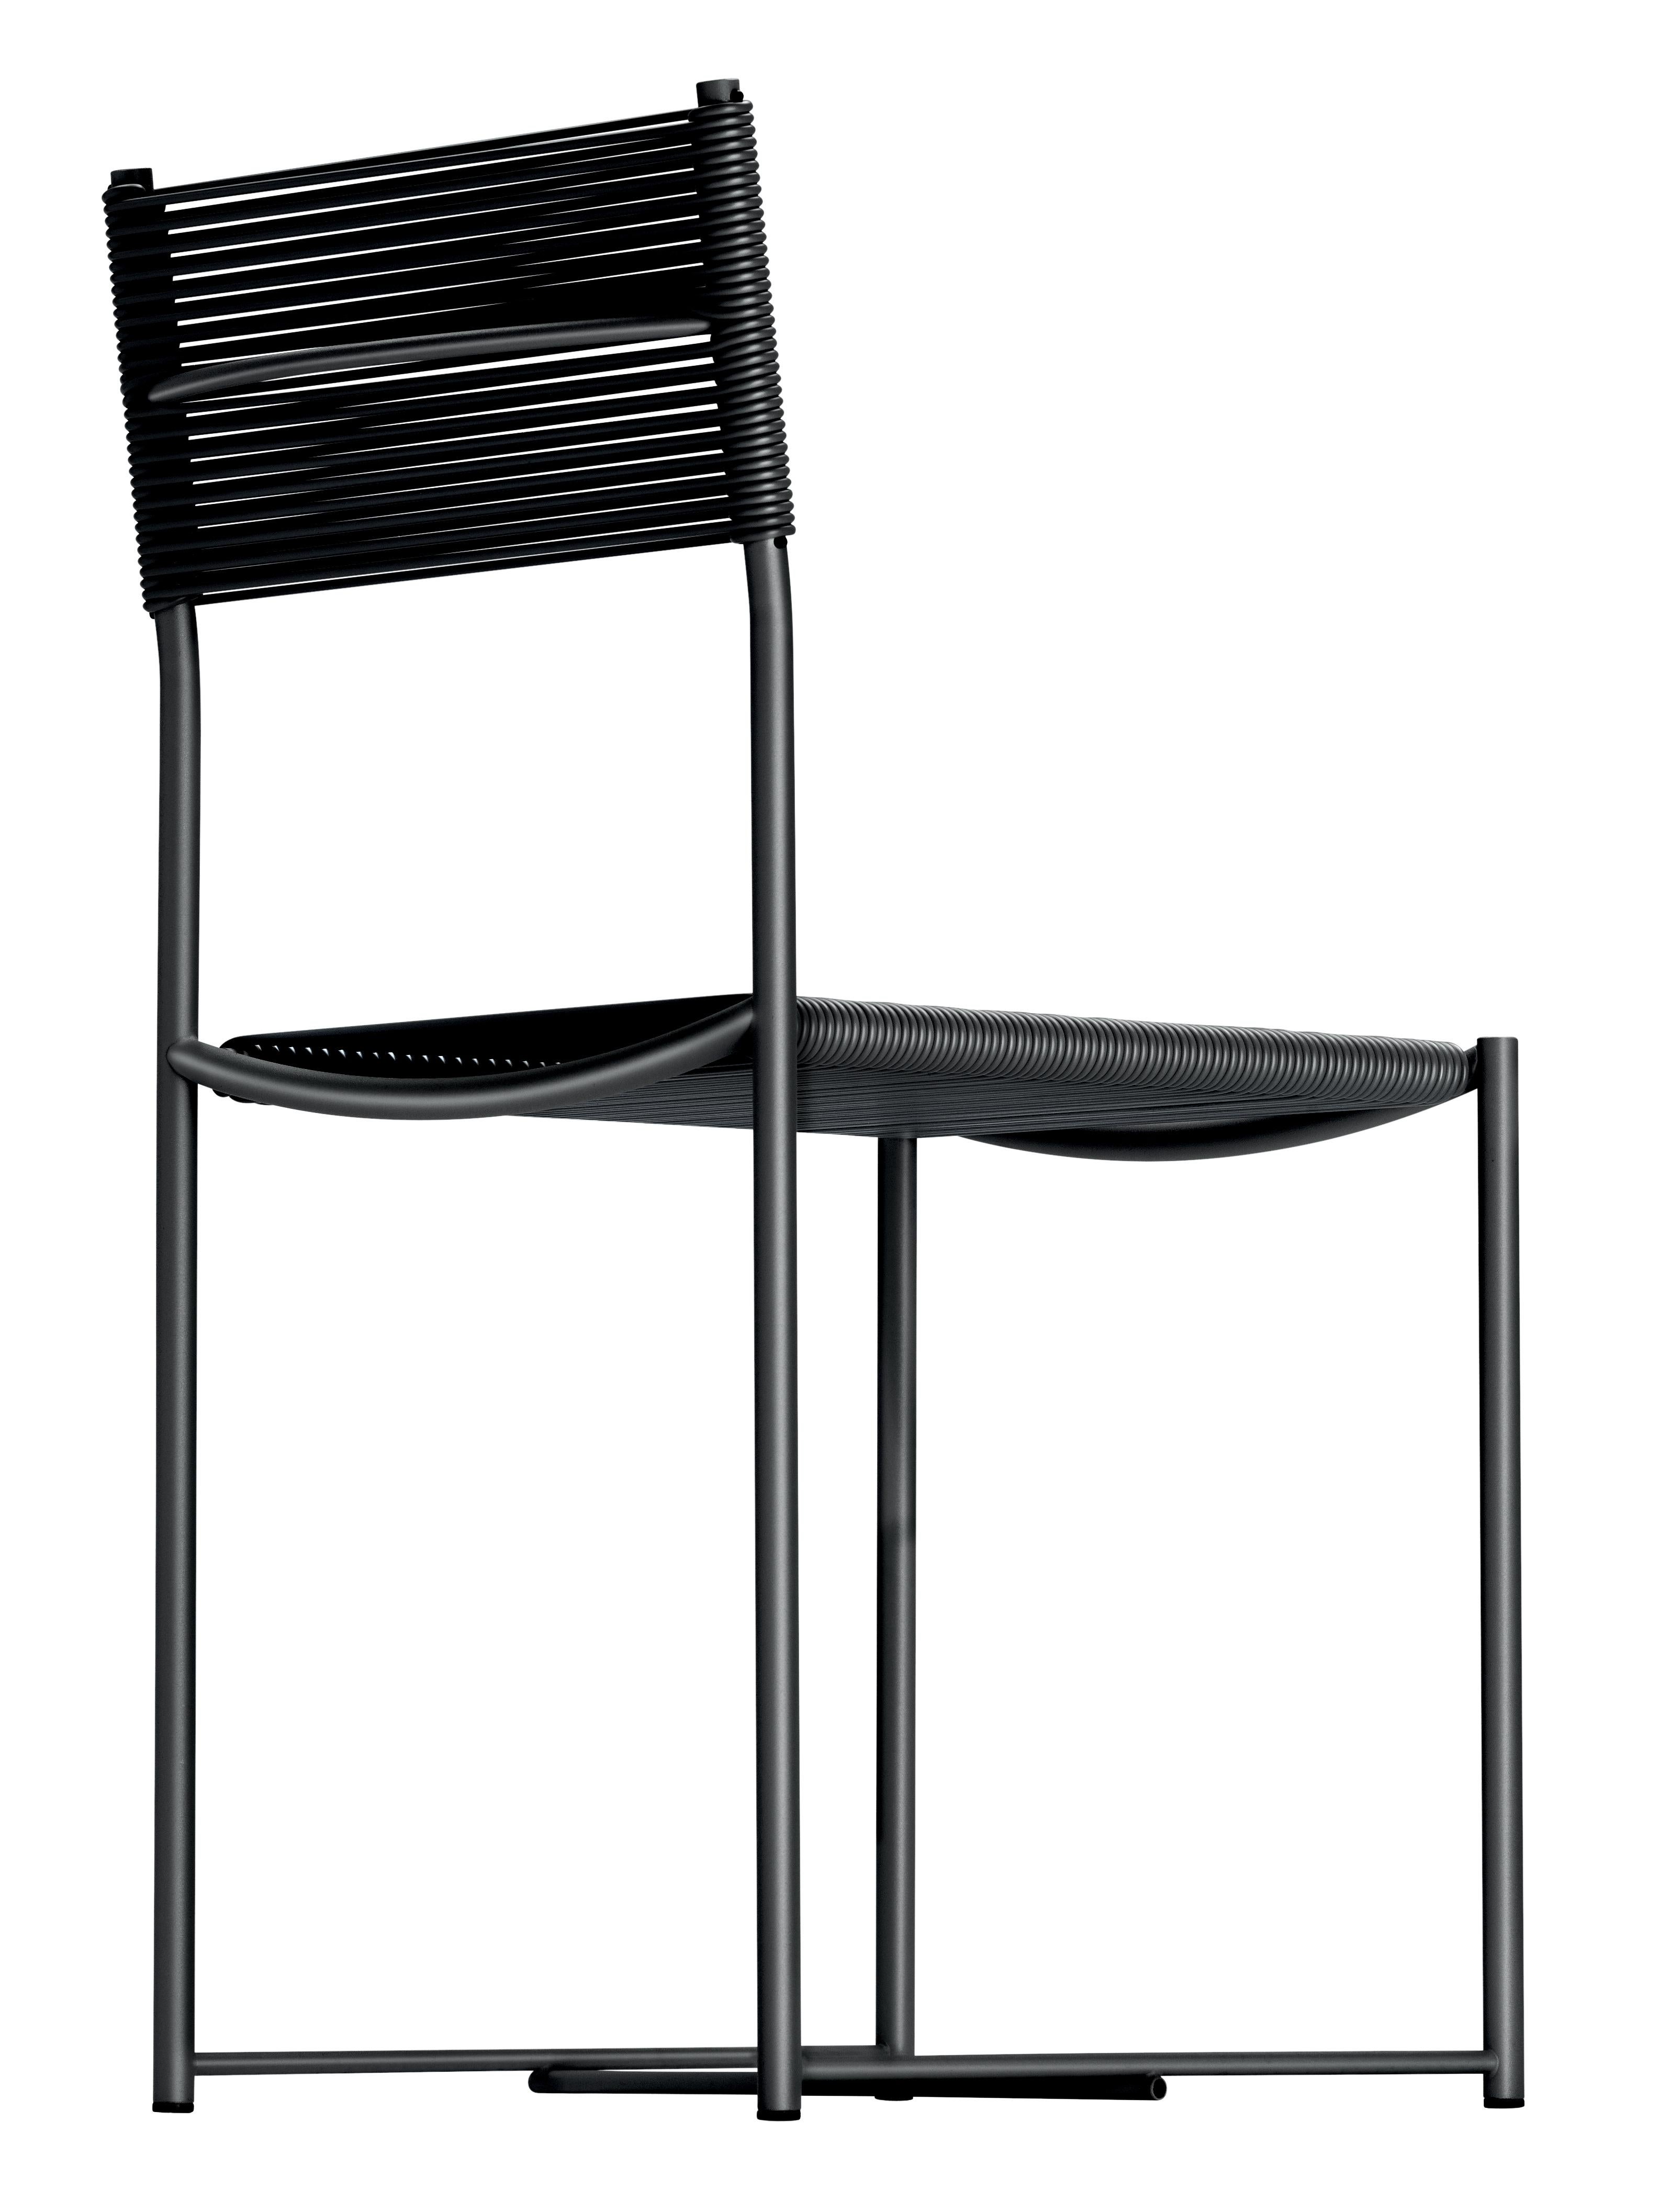 Alias 101 Spaghetti Chair mit Sitz aus schwarzem PVC und Gestell aus schwarz lackiertem Stahl by Giandomenico Belotti

Stuhl mit Struktur aus verchromtem oder lackiertem Stahl, Sitz und Rückenlehne aus PVC.

(1922-2004) Nach seinem